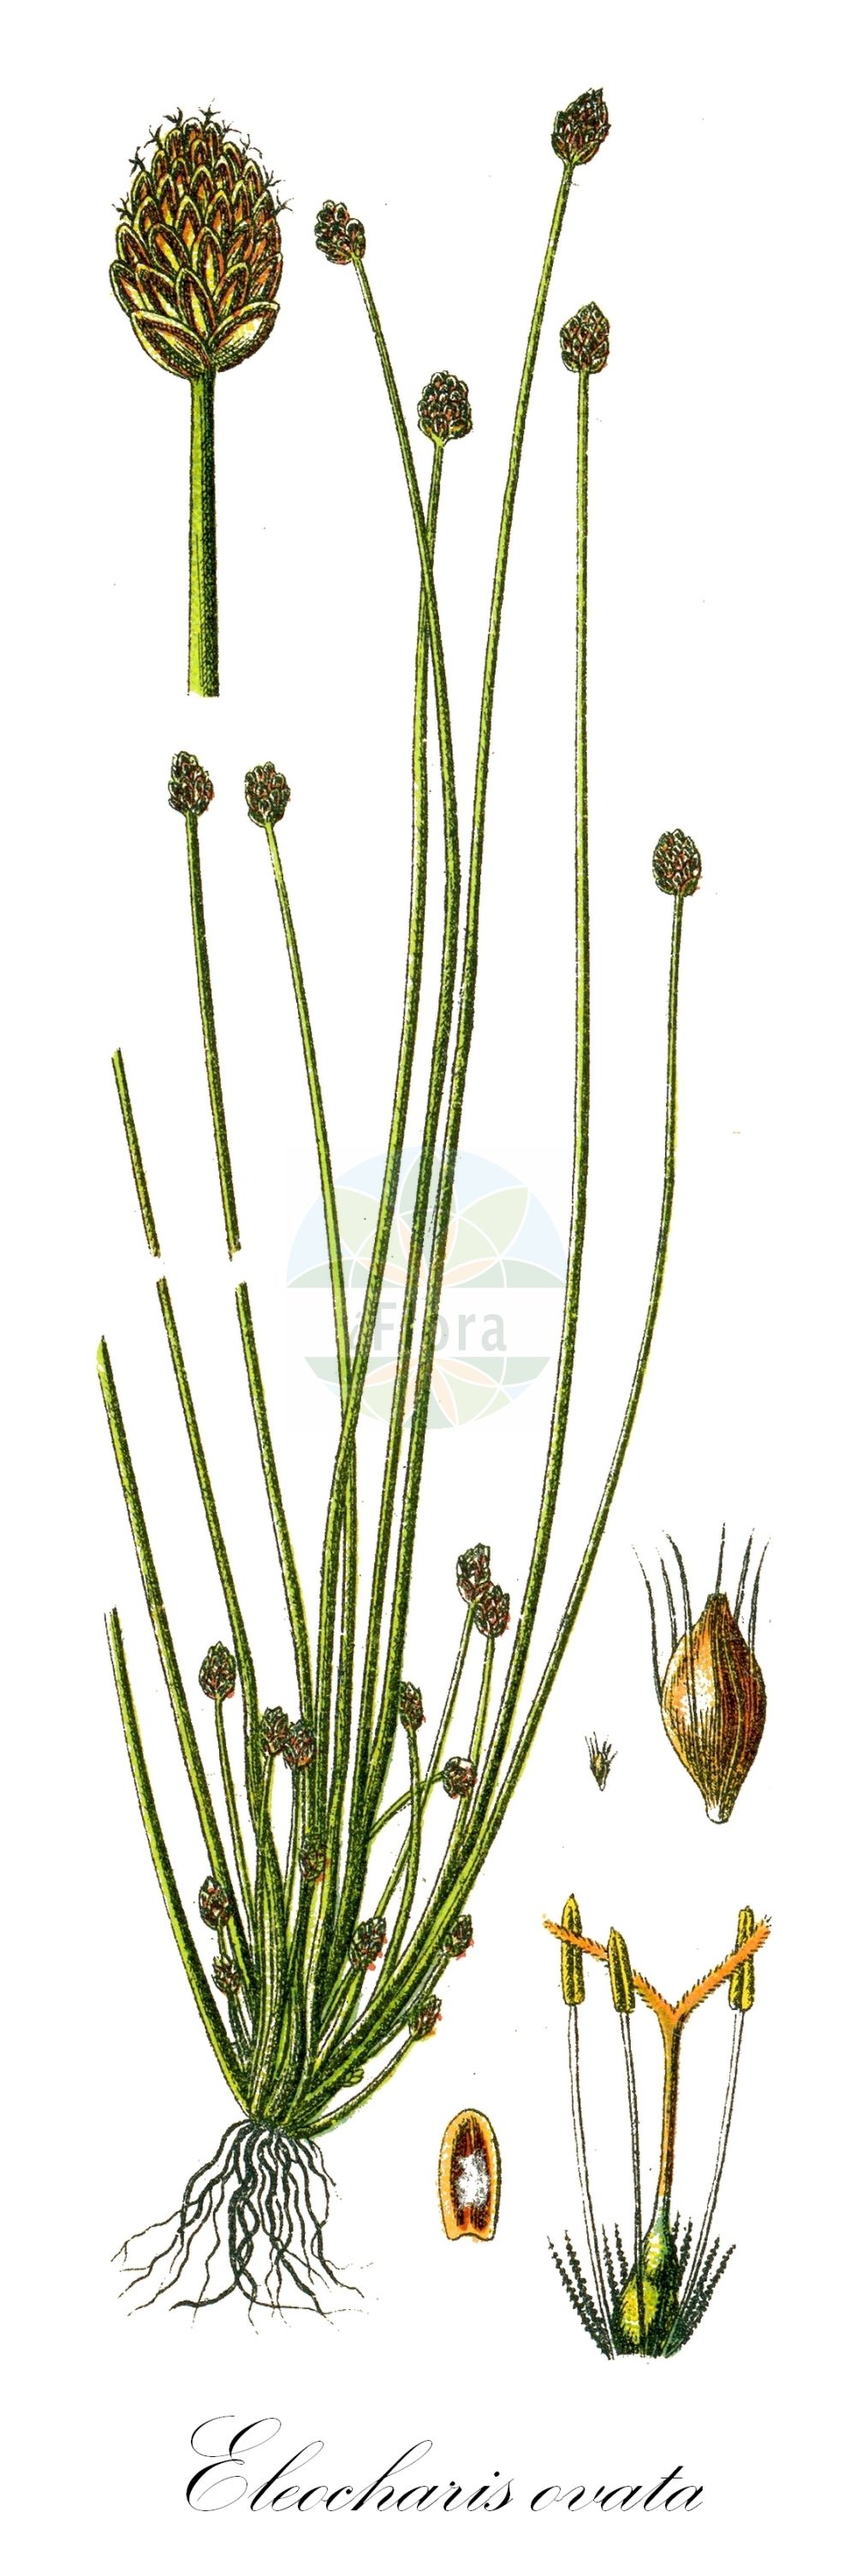 Historische Abbildung von Eleocharis ovata (Eiförmige Sumpfbinse - Oval Spike-rush). Das Bild zeigt Blatt, Bluete, Frucht und Same. ---- Historical Drawing of Eleocharis ovata (Eiförmige Sumpfbinse - Oval Spike-rush). The image is showing leaf, flower, fruit and seed.(Eleocharis ovata,Eiförmige Sumpfbinse,Oval Spike-rush,Eleocharis ovata,Scirpus ovatus,Eifoermige Sumpfbinse,Eikoepfige Sumpfbinse,Ei-Sumpfbinse,Teichriet,Oval Spike-rush,Ovate Spikerush,Eleocharis,Sumpfbinse,Spikerush,Cyperaceae,Sauergräser,Sedge family,Blatt,Bluete,Frucht,Same,leaf,flower,fruit,seed,Sturm (1796f))